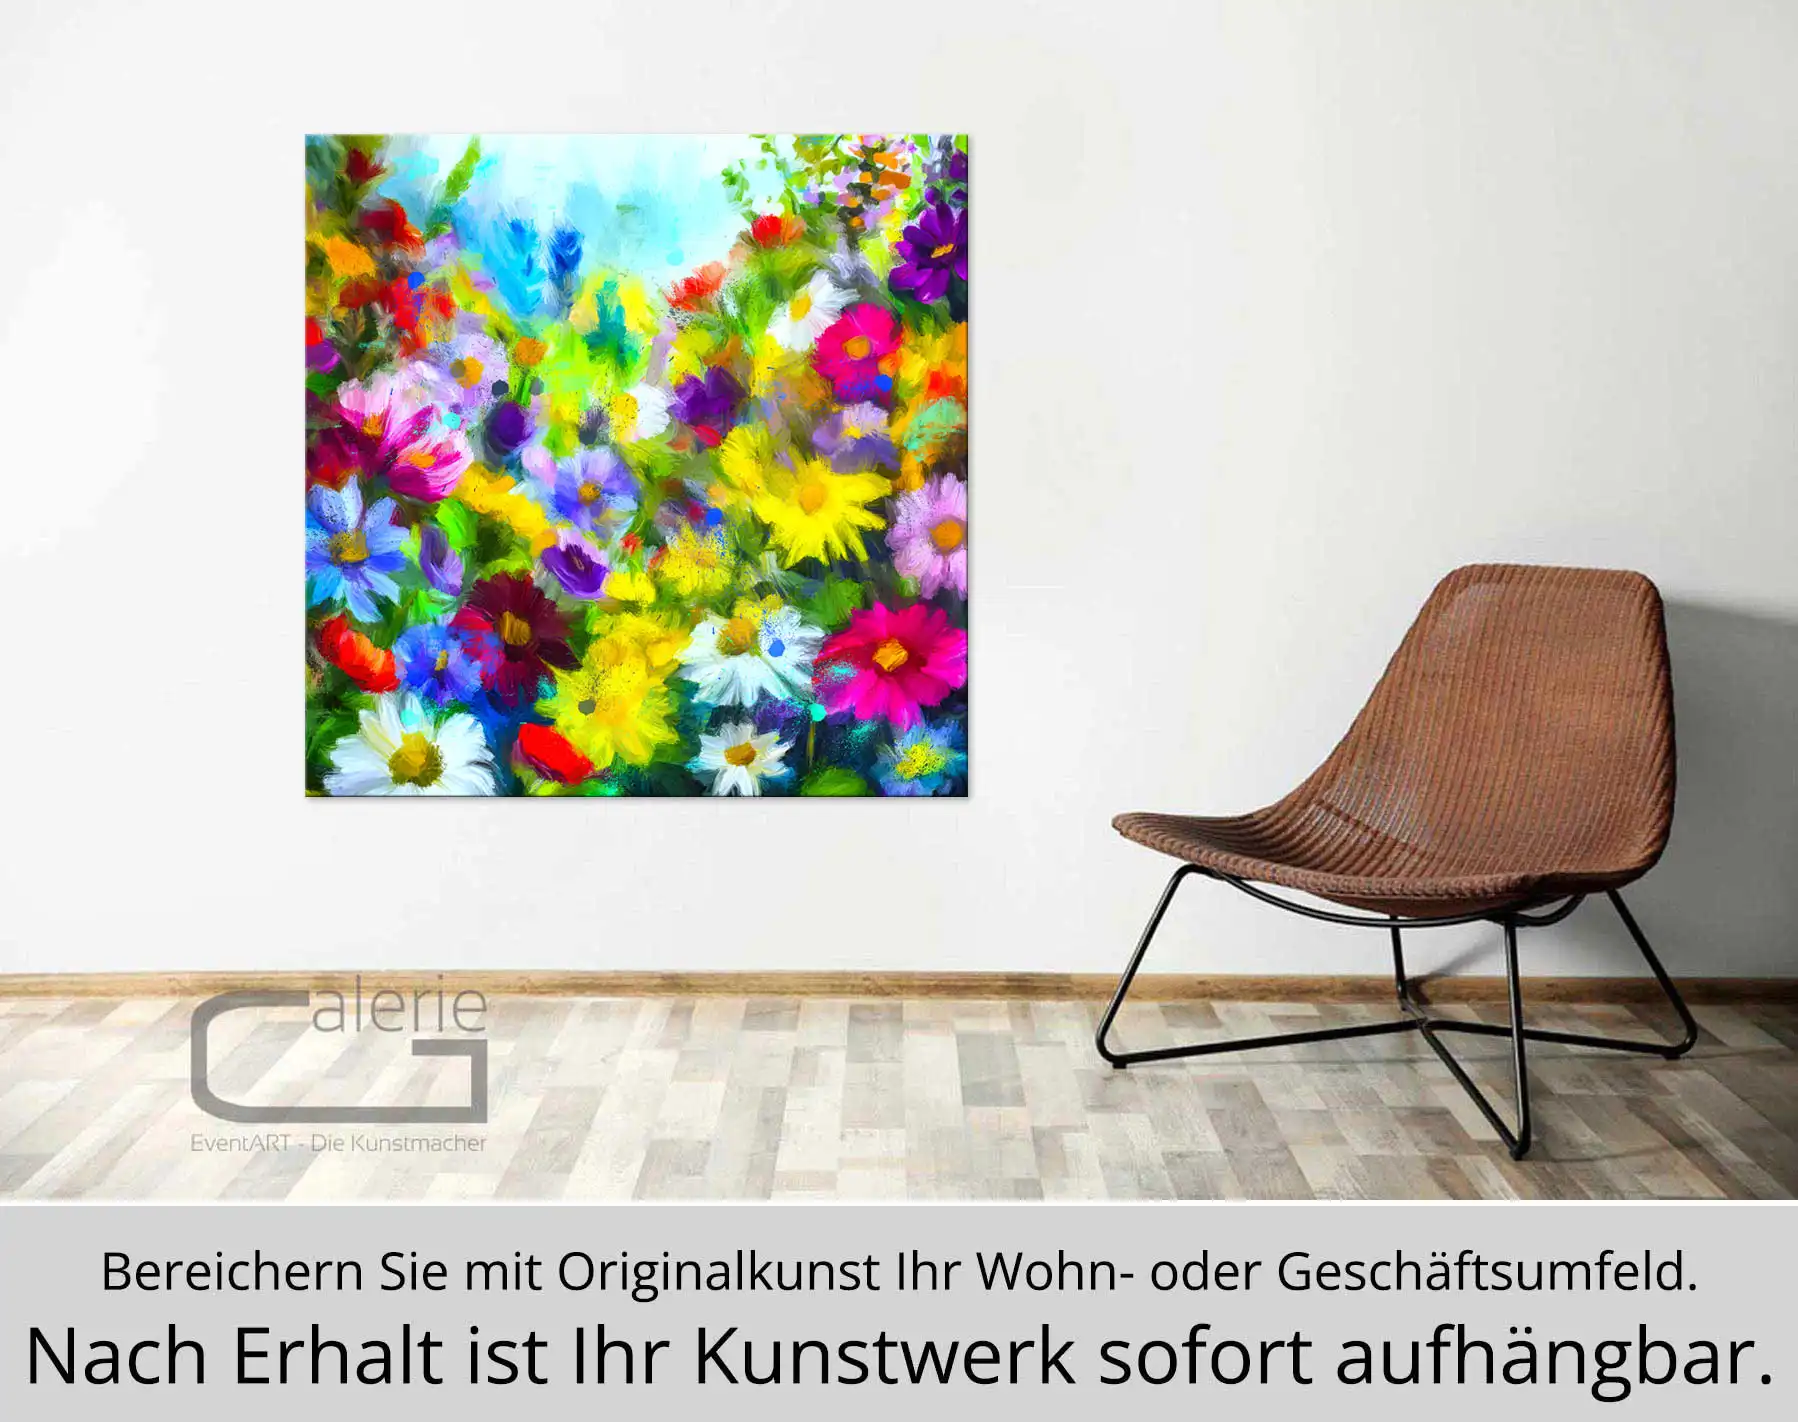 Moderne Kunst: "Die Kraft der Farben", H. Mühlbauer-Gardemin, Original/serielles Unikat